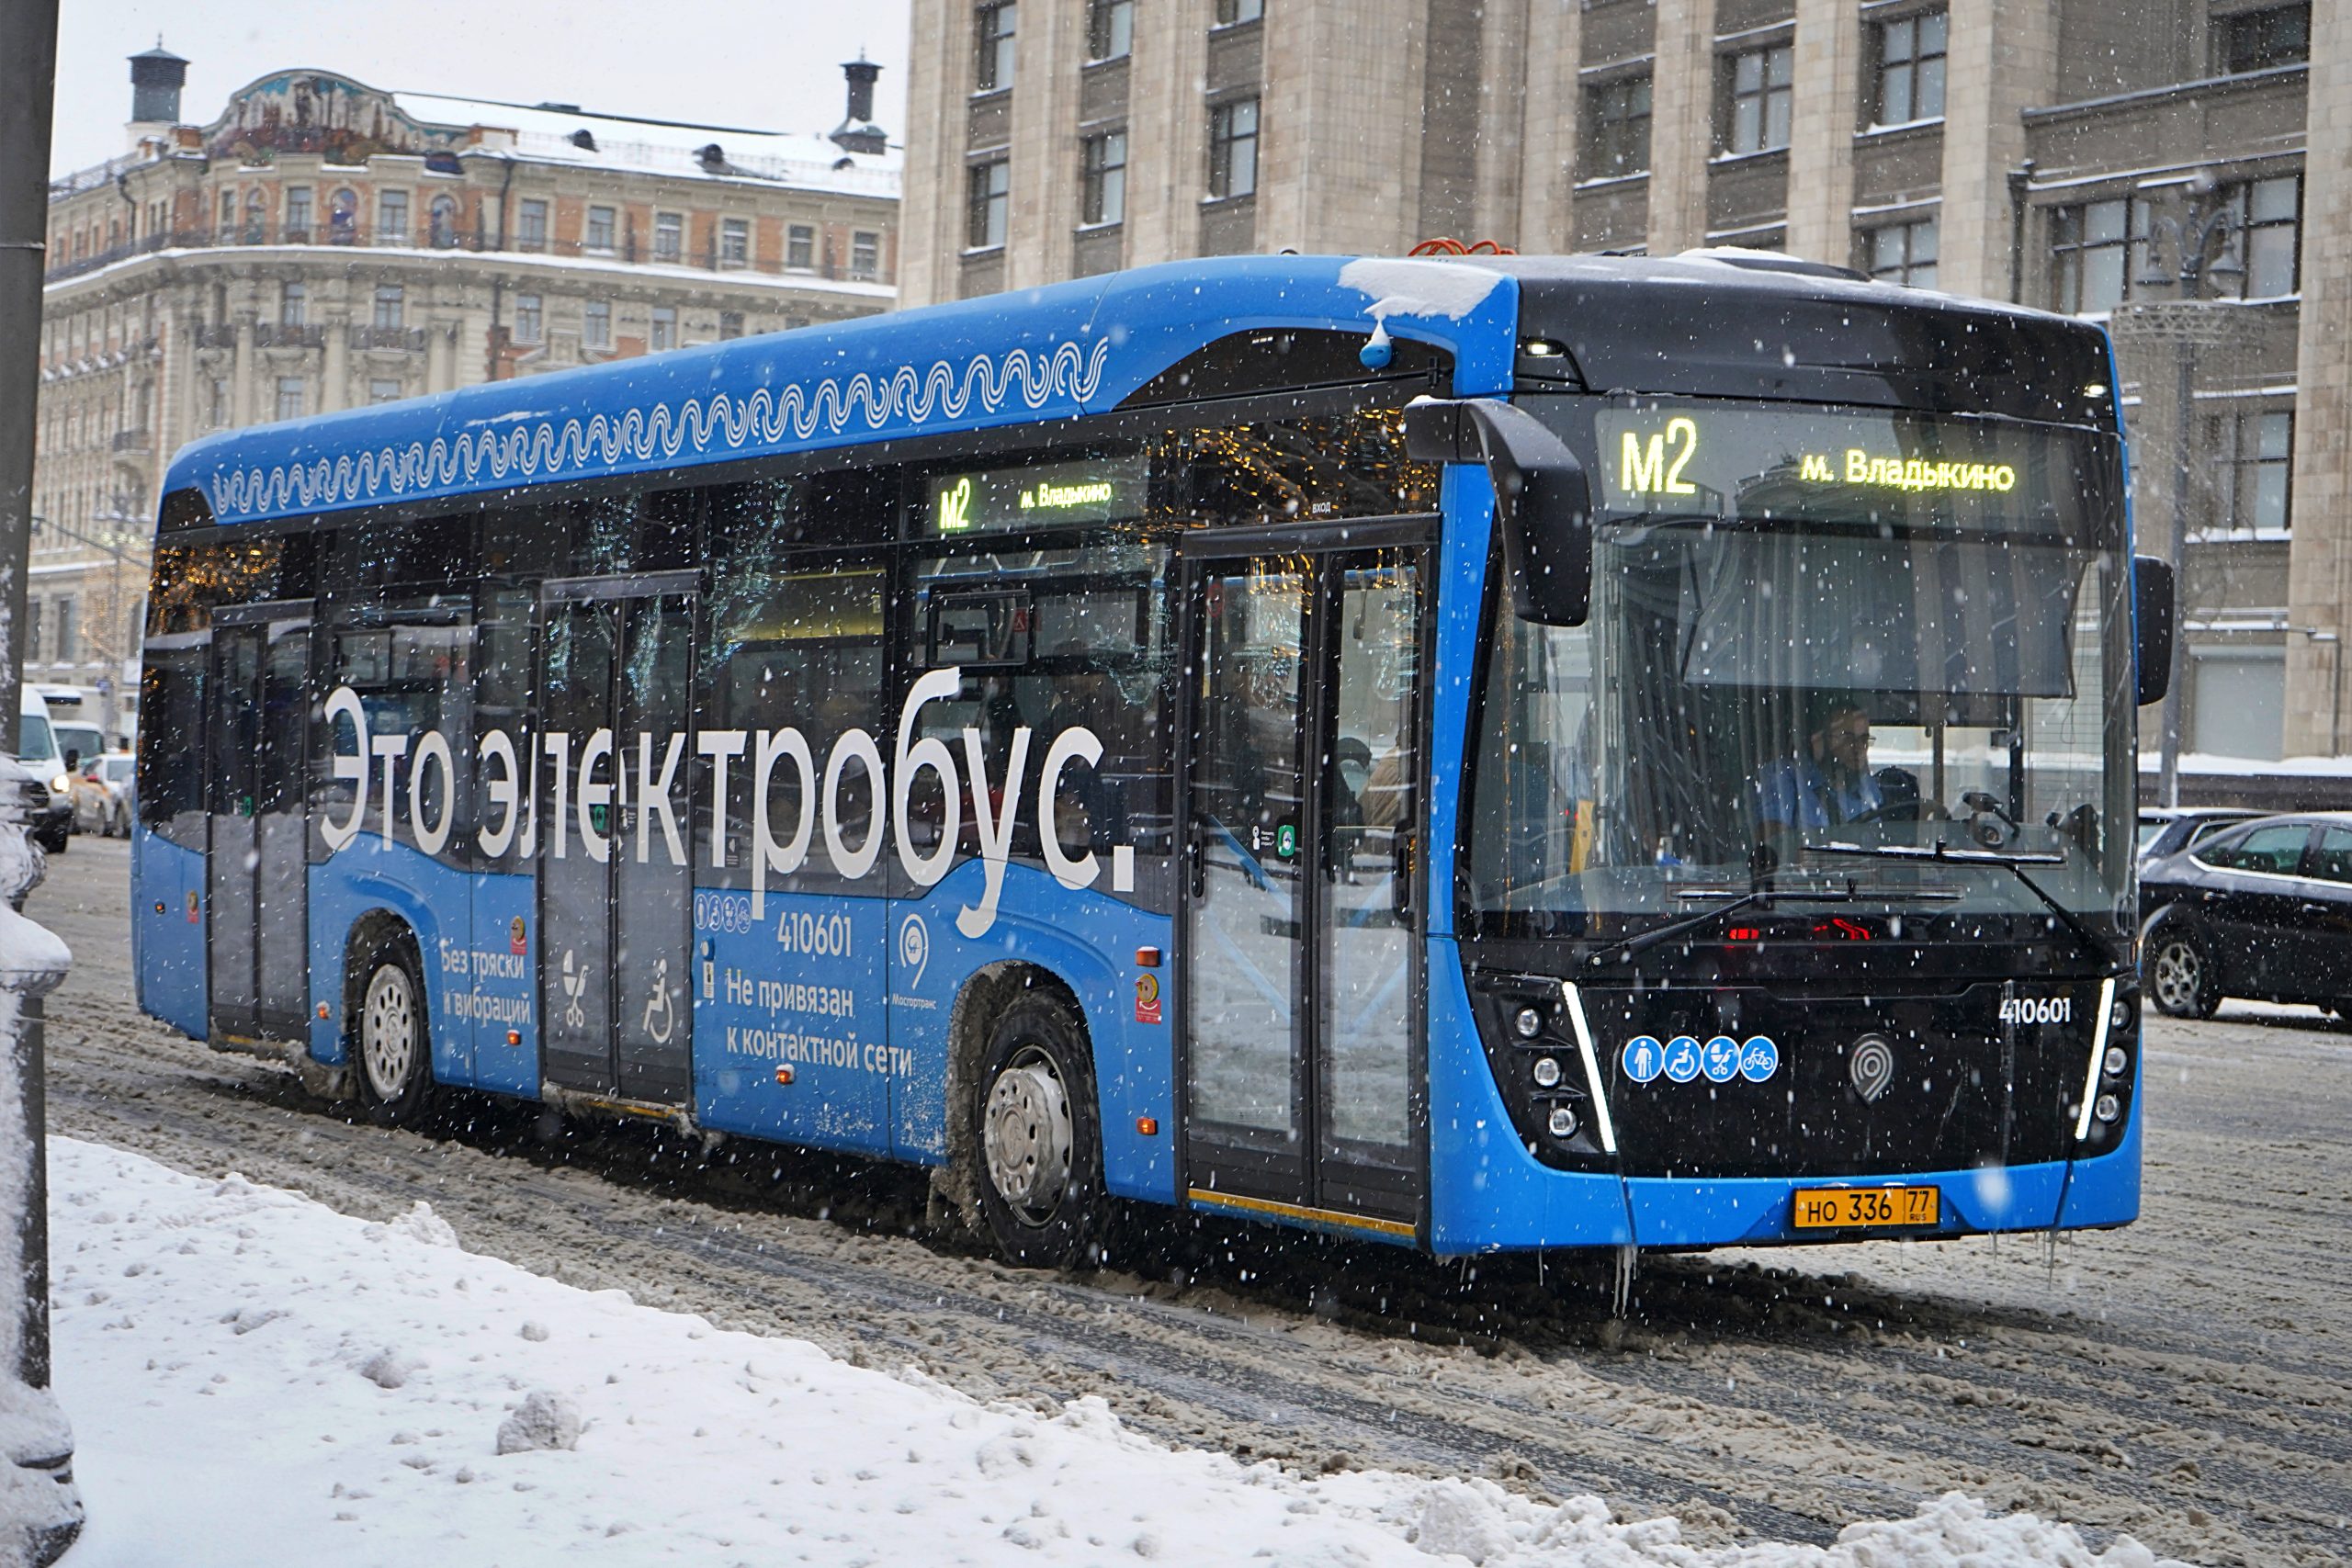 Около 5,3 тысячи электробус будет курсировать по столице к 2030 году. Фото: Анна Быкова, «Вечерняя Москва»